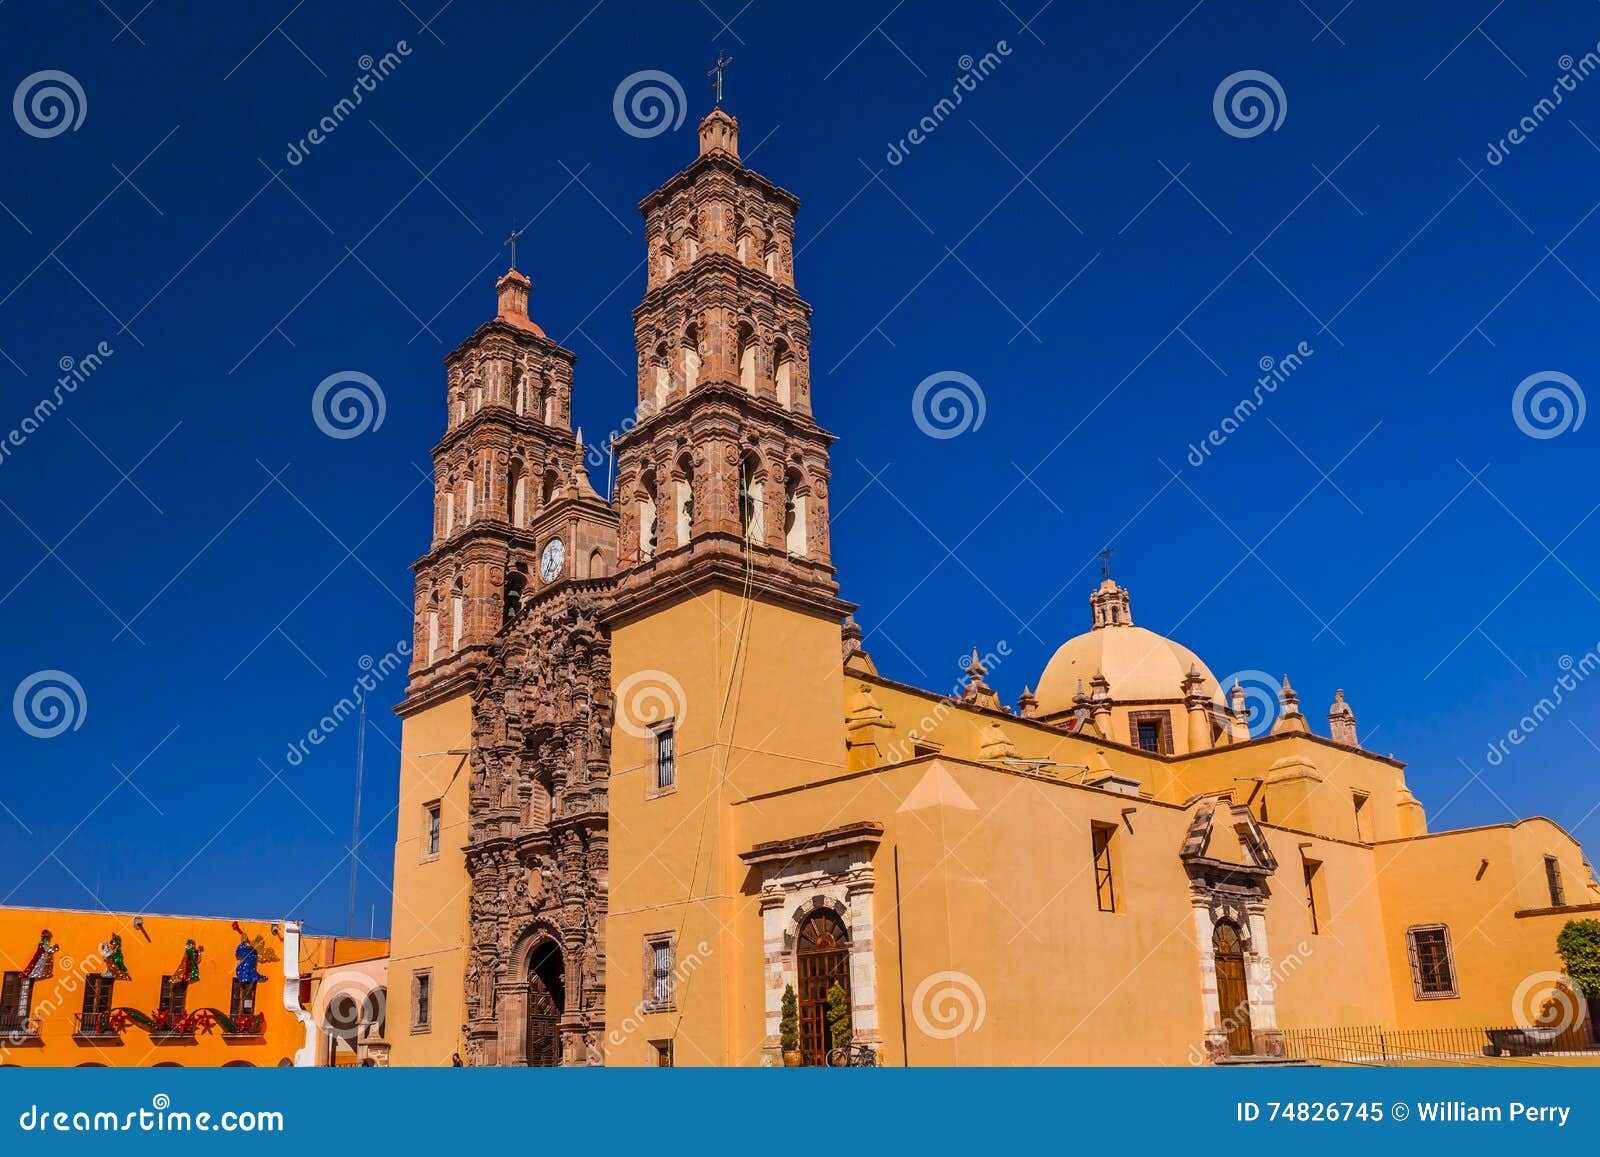 parroquia cathedral dolores hidalgo mexico